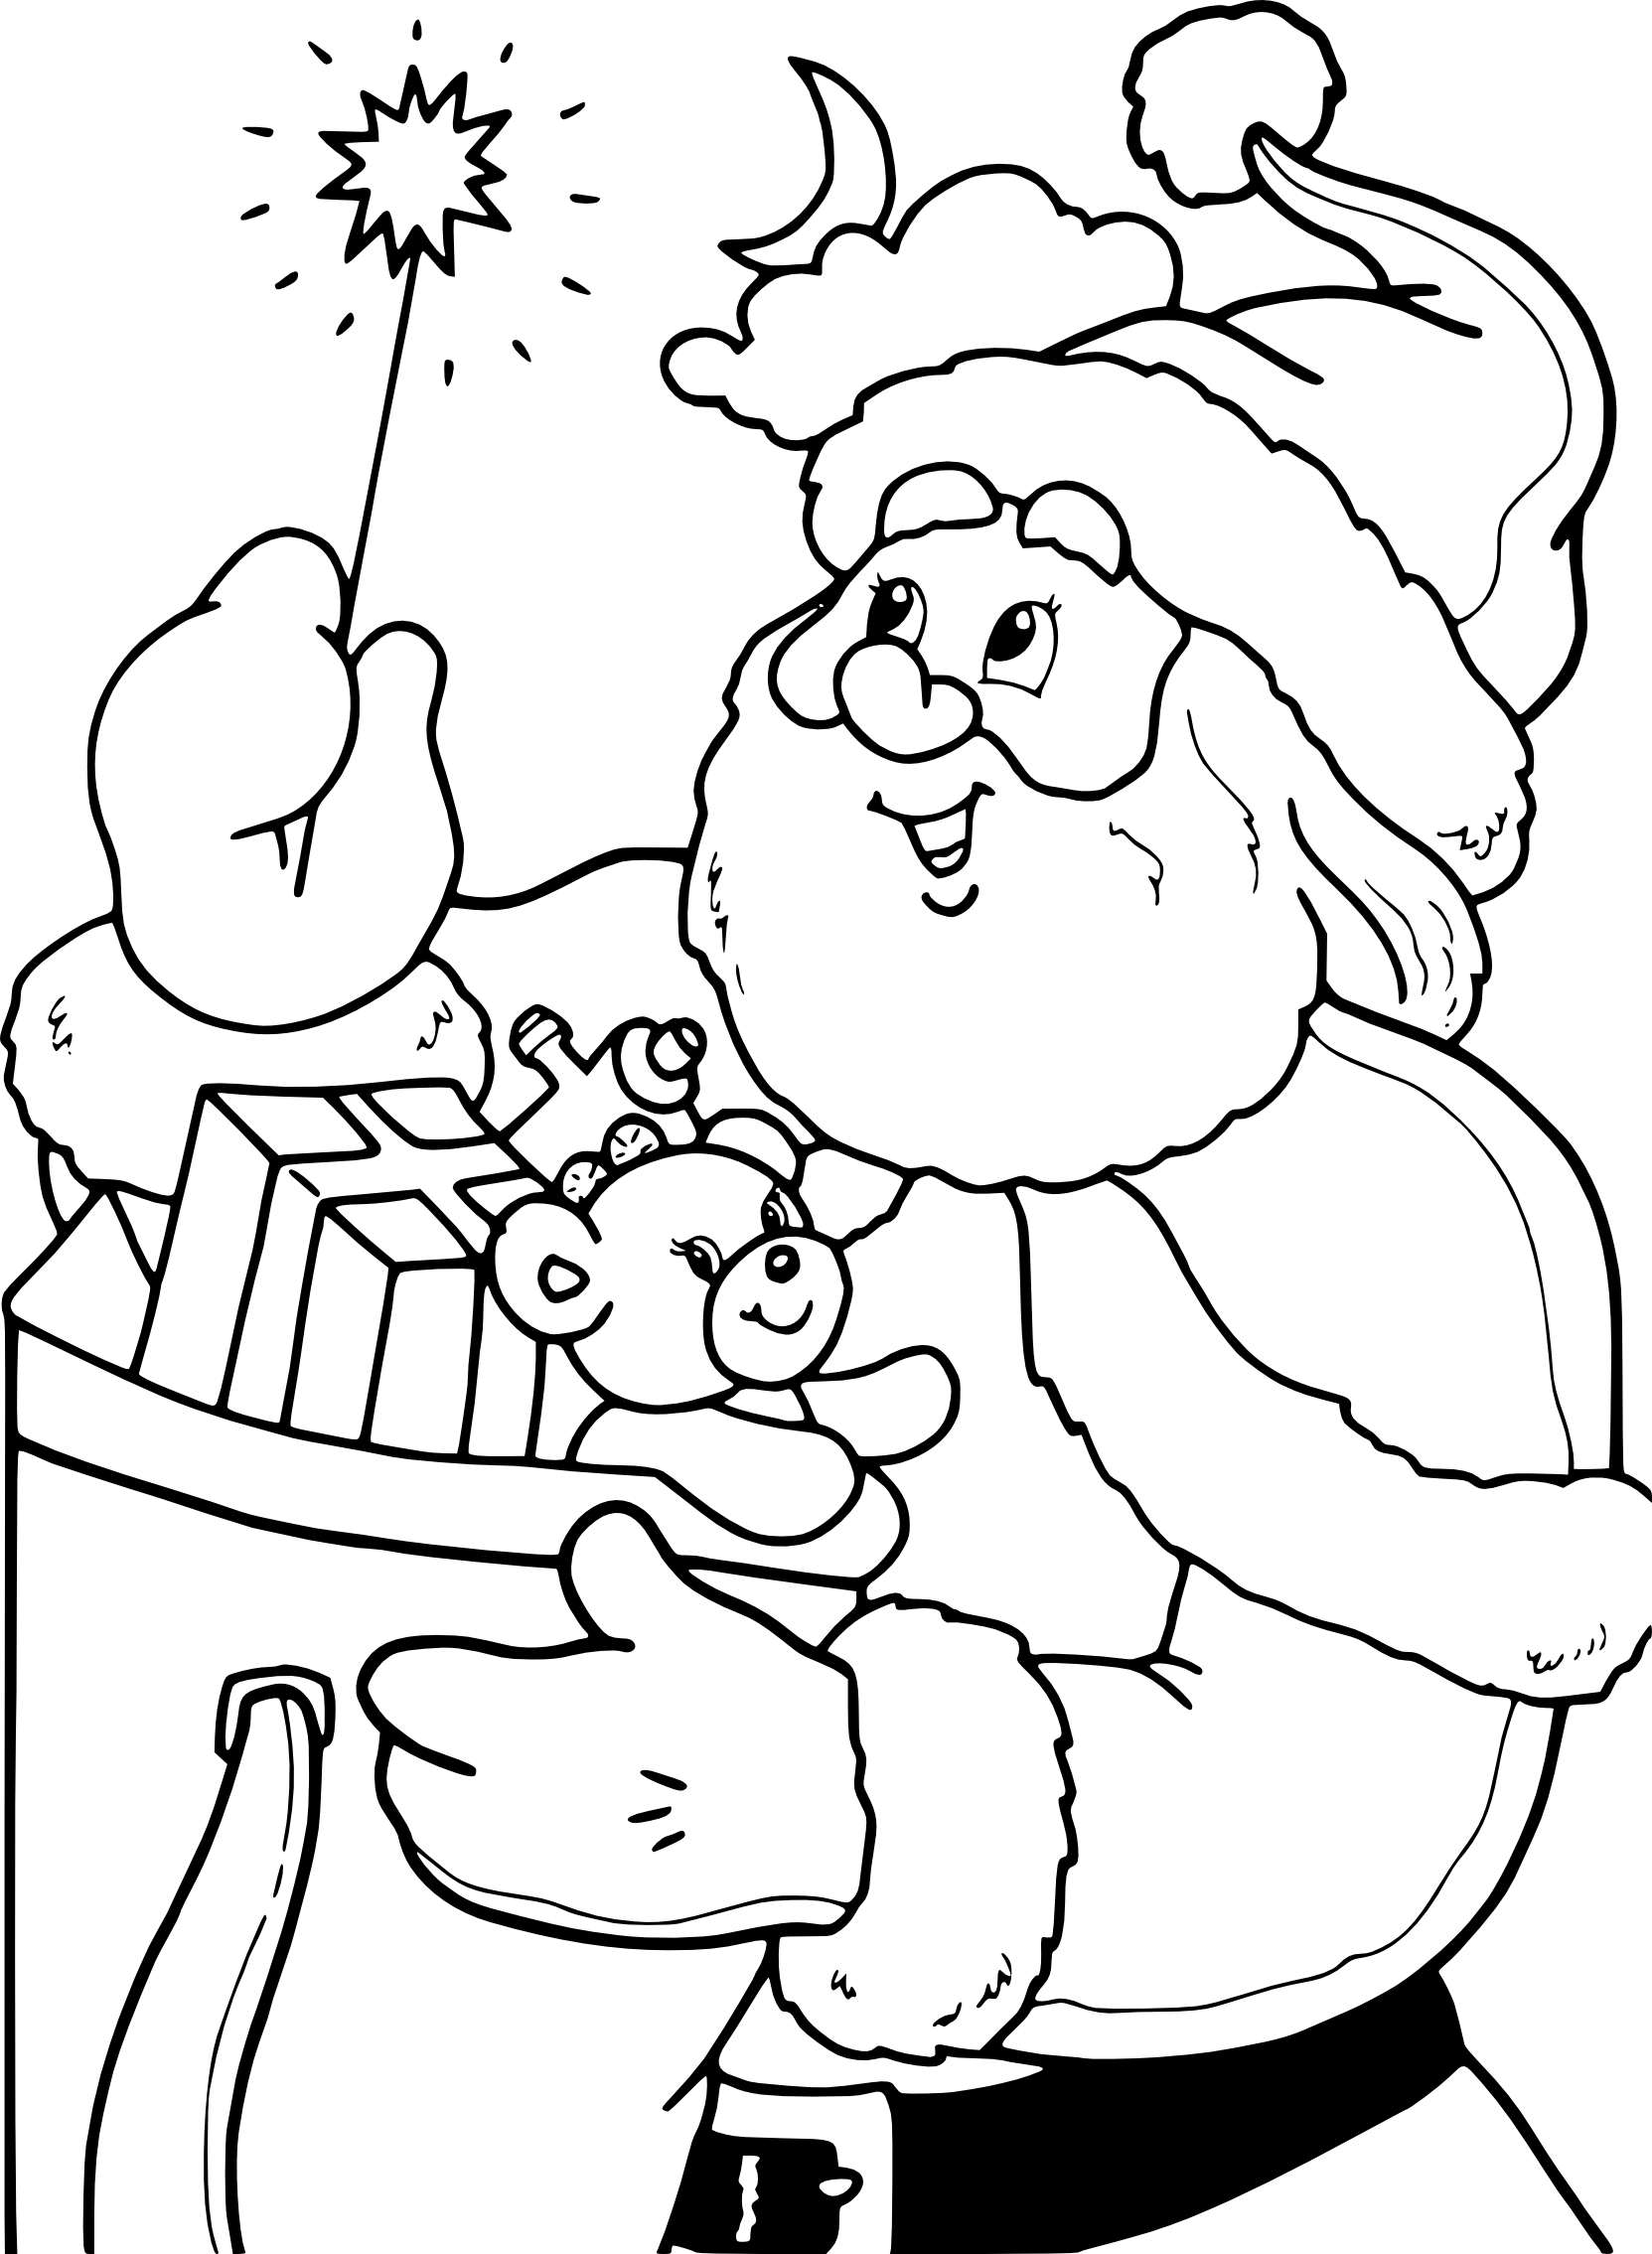 Santa Claus And A Magic Wand coloring page